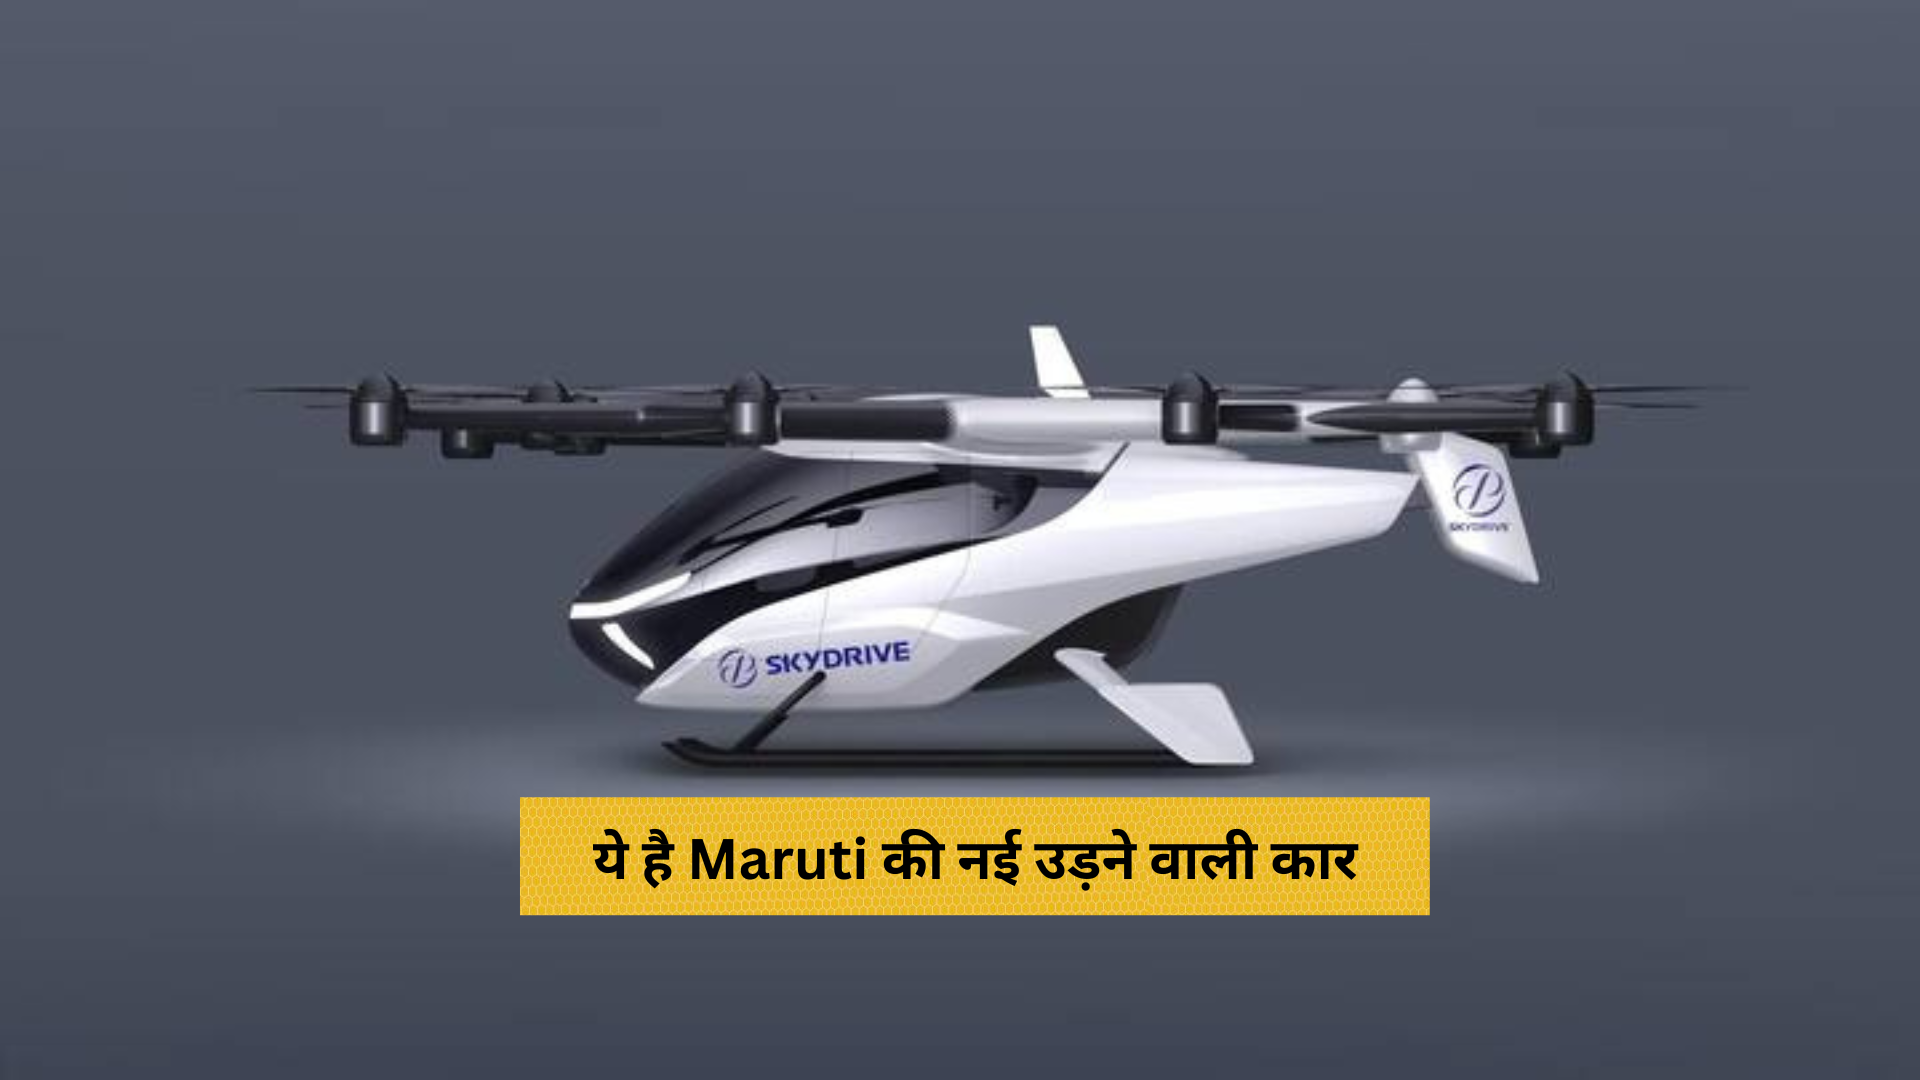 Maruti की नई उड़ने वाली कार